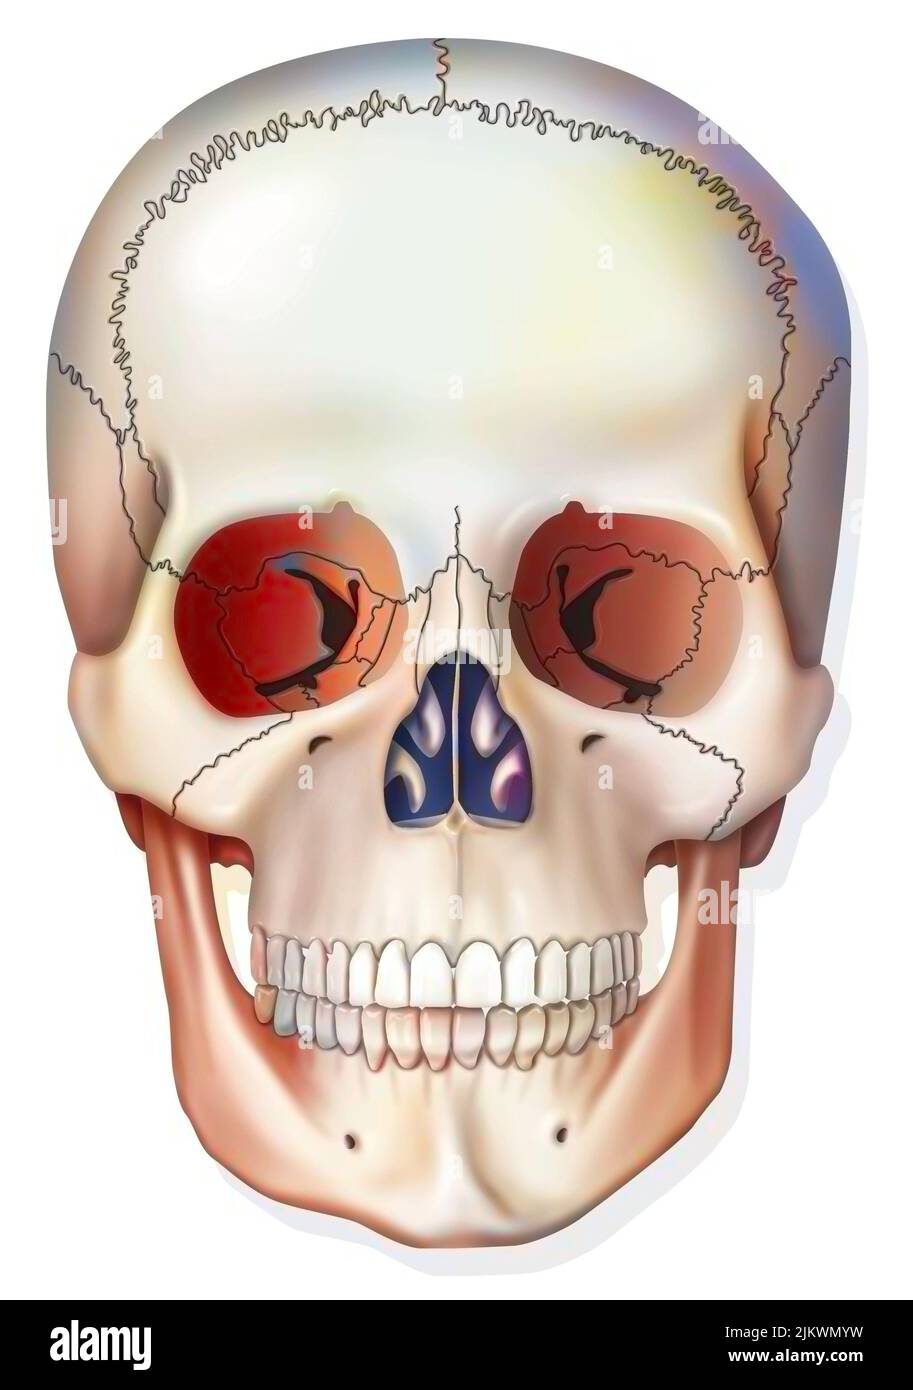 Sistema osseo: Cranio umano con osso mandibolare, occhielli. Foto Stock